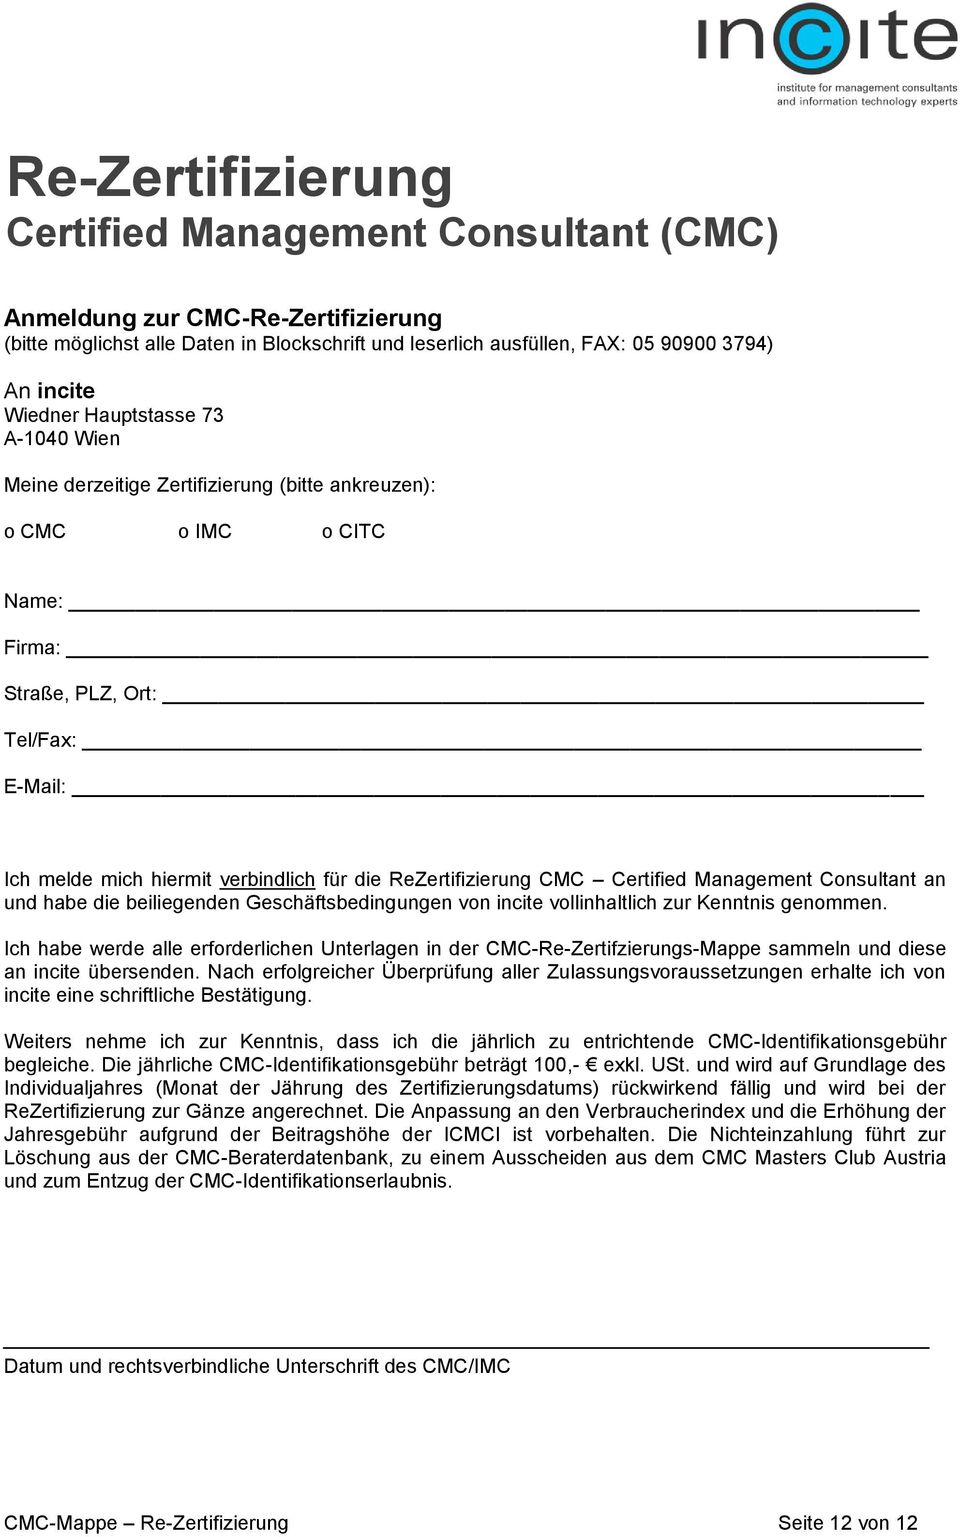 ReZertifizierung CMC Certified Management Consultant an und habe die beiliegenden Geschäftsbedingungen von incite vollinhaltlich zur Kenntnis genommen.